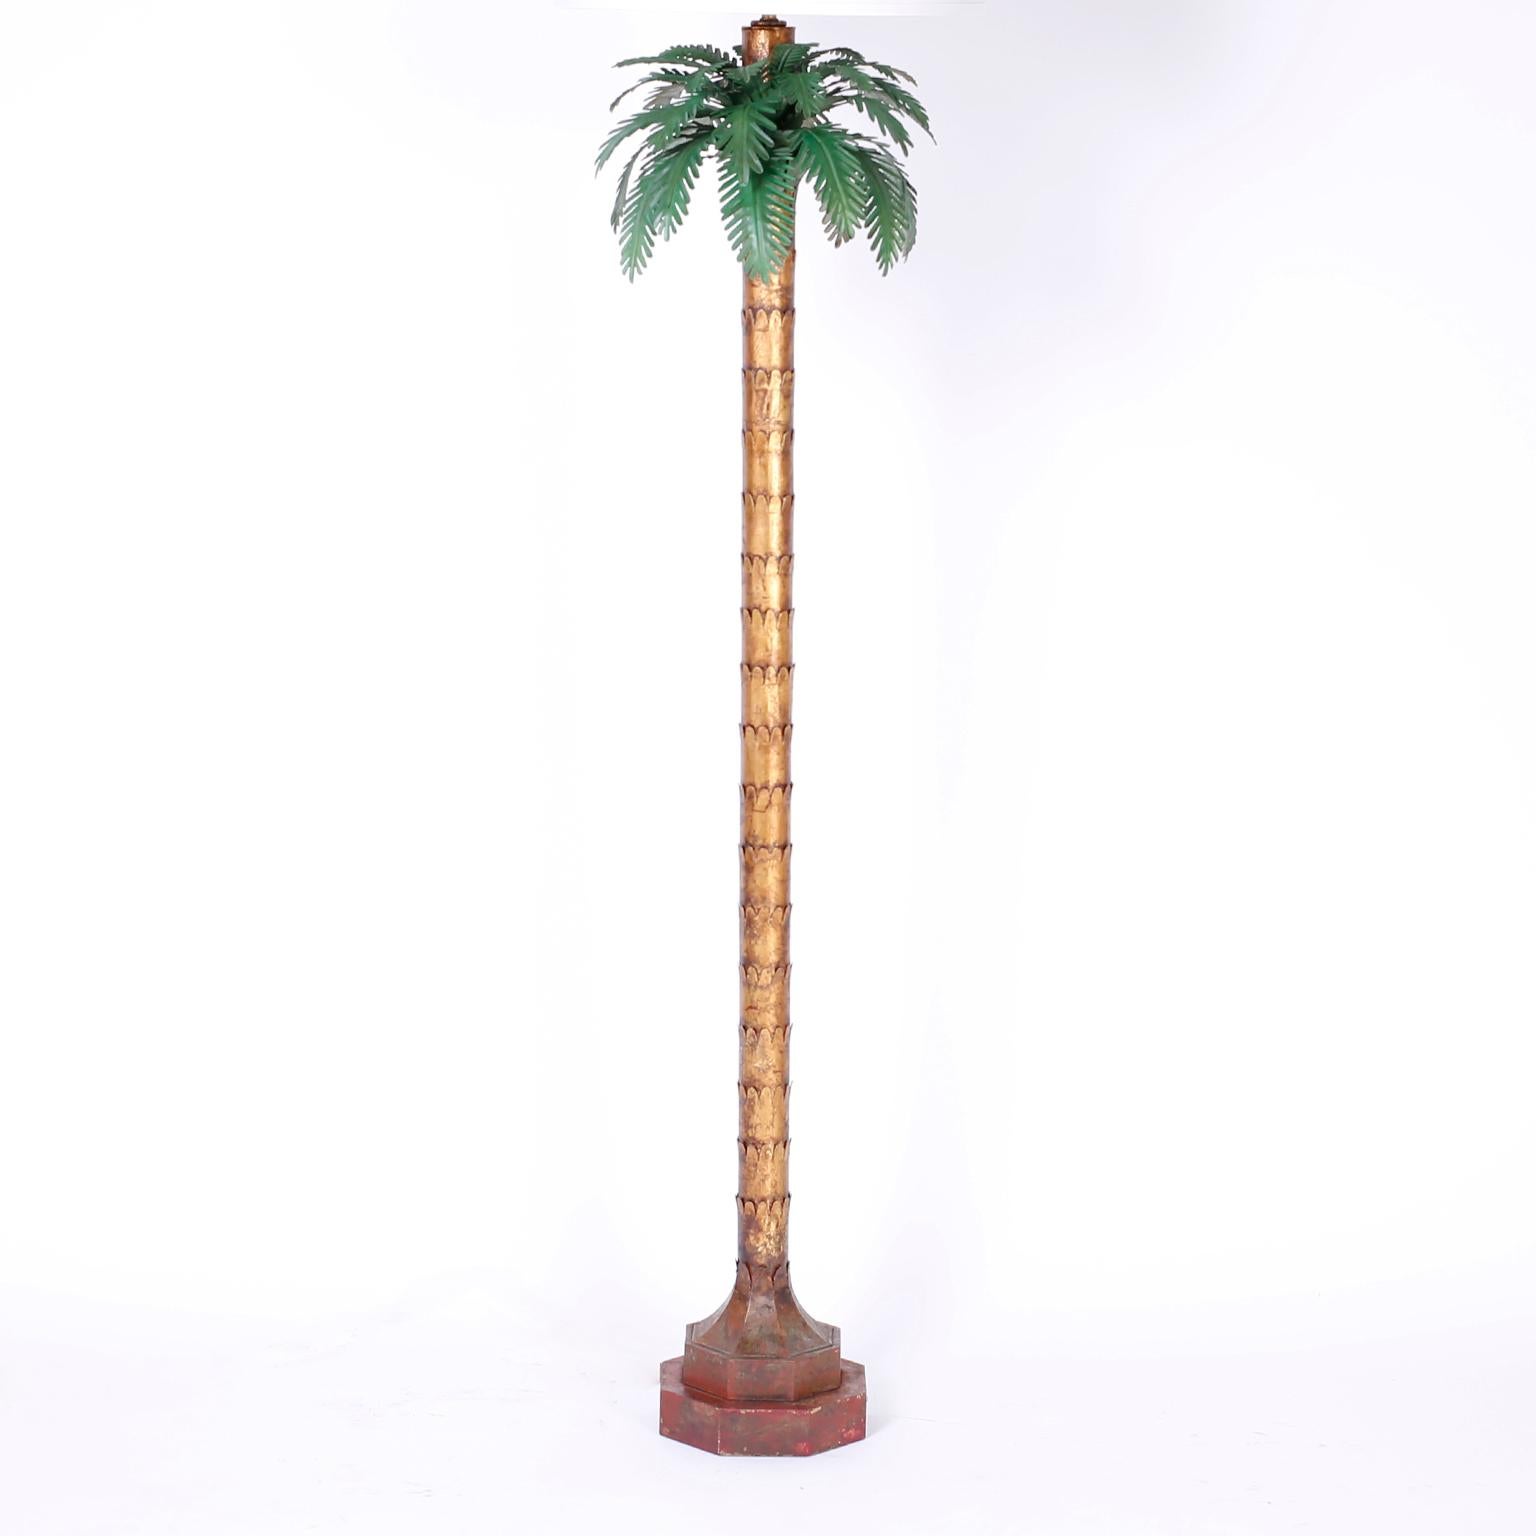 Avec une combinaison de charme du vieux monde et d'élégance moderne, ce lampadaire Palm Tree est à la hauteur. Les feuilles de tilleul sont discrètes et soutenues par un tronc stylisé en métal doré s'élevant d'un double socle en faux marbre usé.